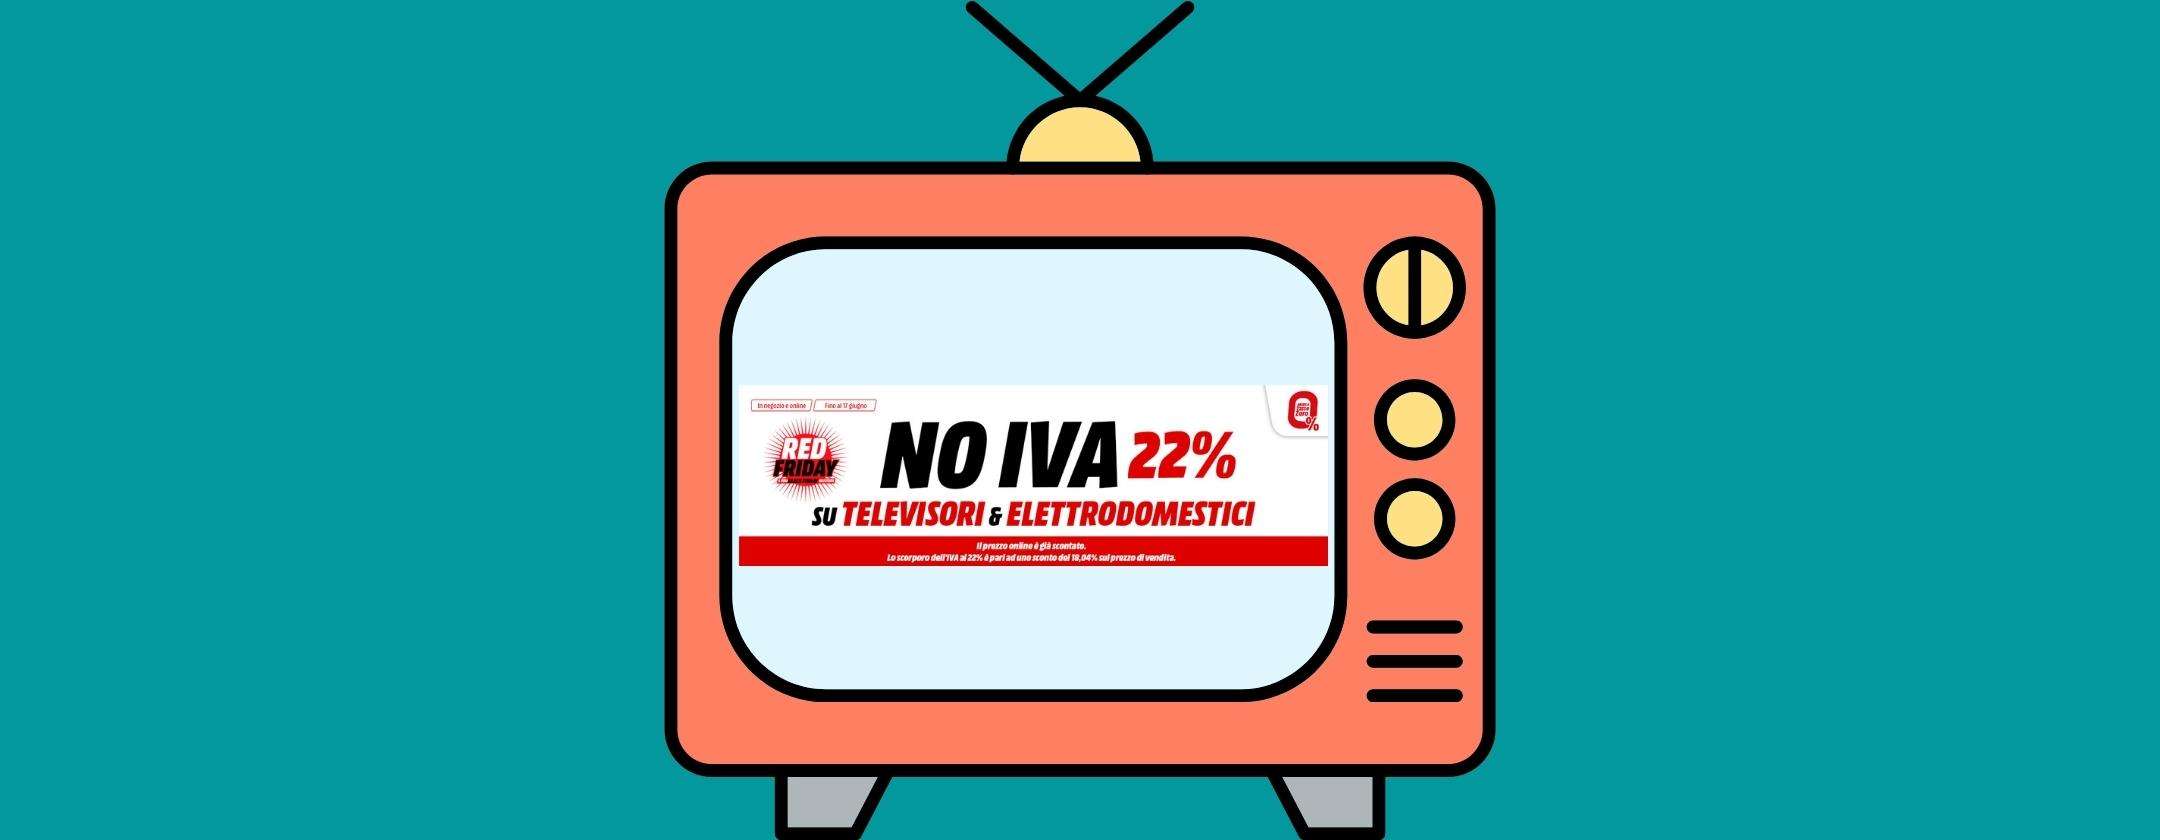 Volantino MediaWorld: arriva il No IVA 22% sui migliori televisori